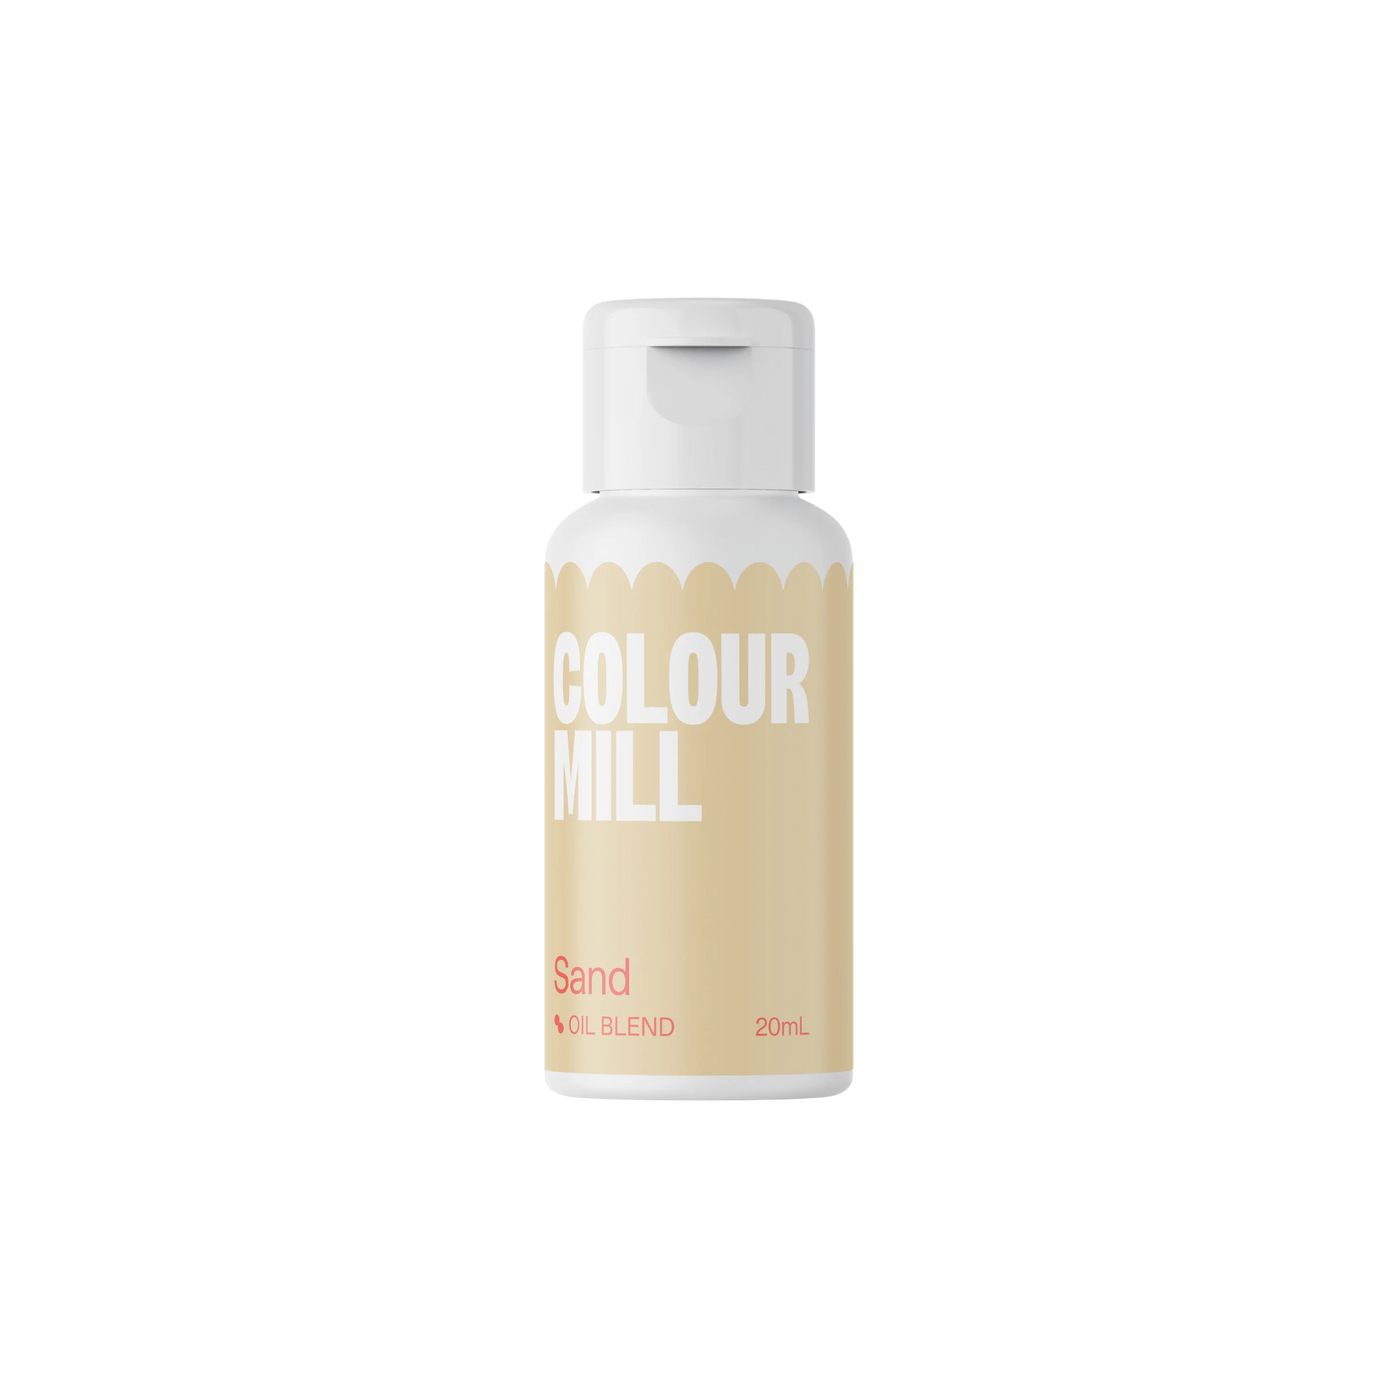 Χρώμα Πάστας Sand oil based Colour Mill 20 ml.